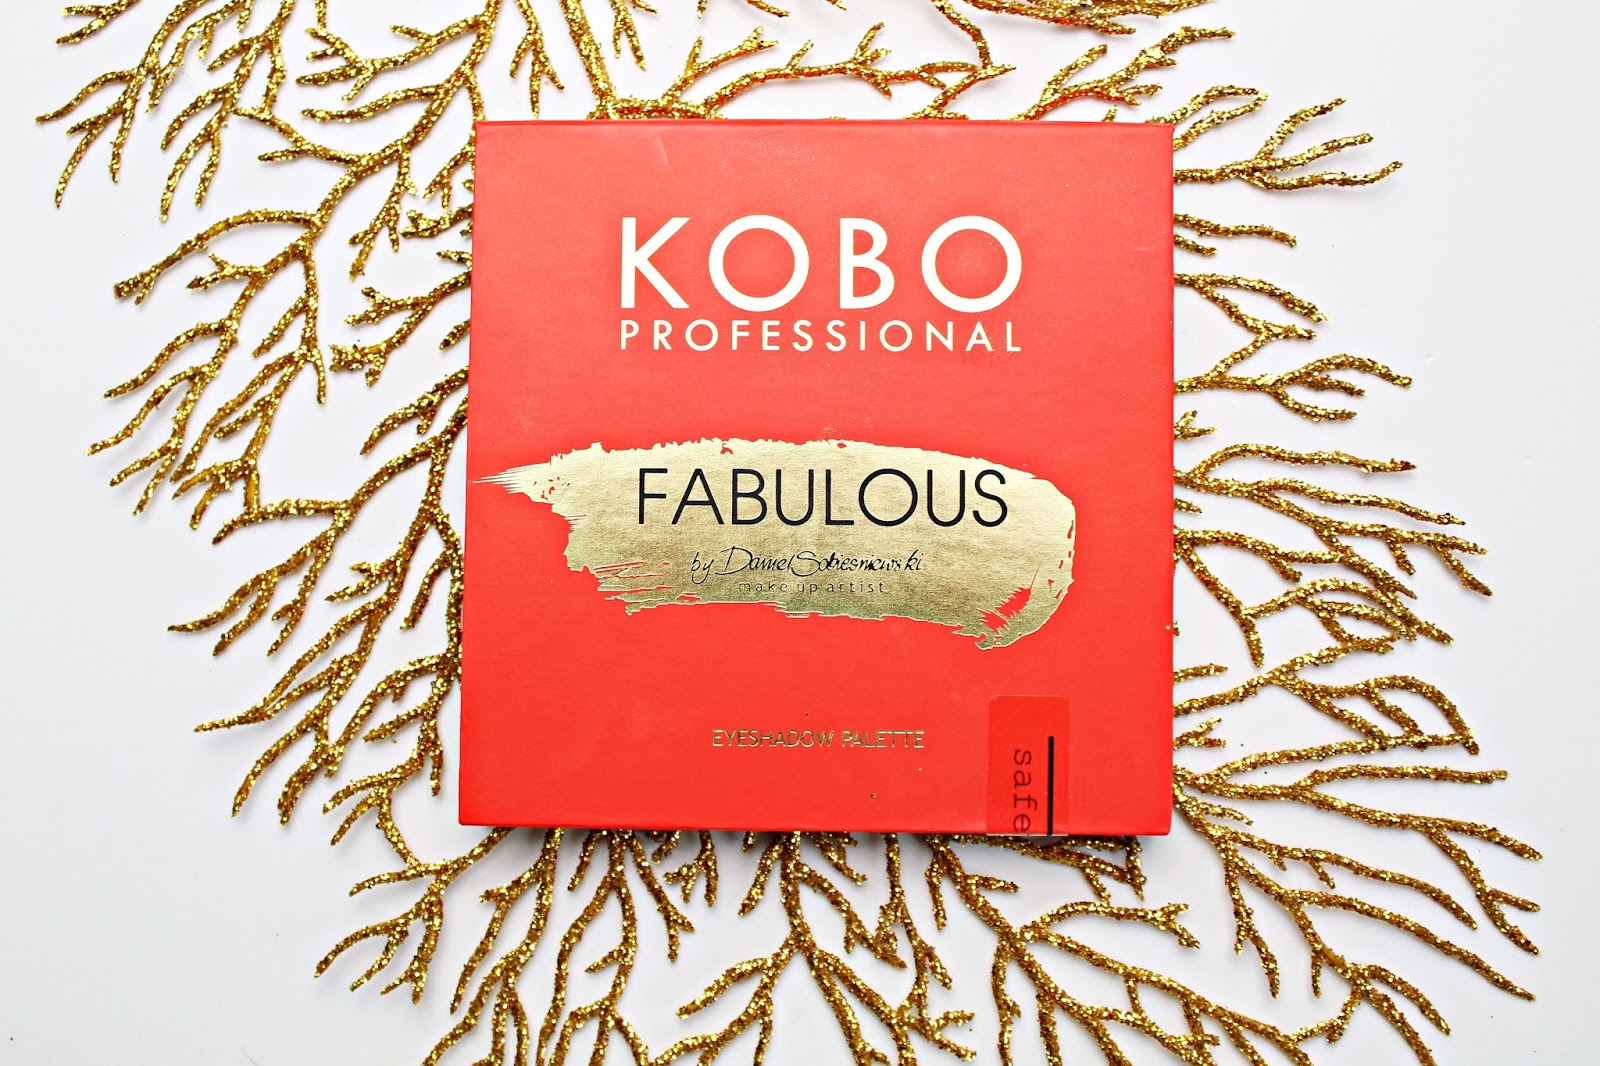 Kobo Professional FABULOUS by Daniel Sobieśniewski - paleta cieni z limitowanej edycji  | Zuzka Pisze